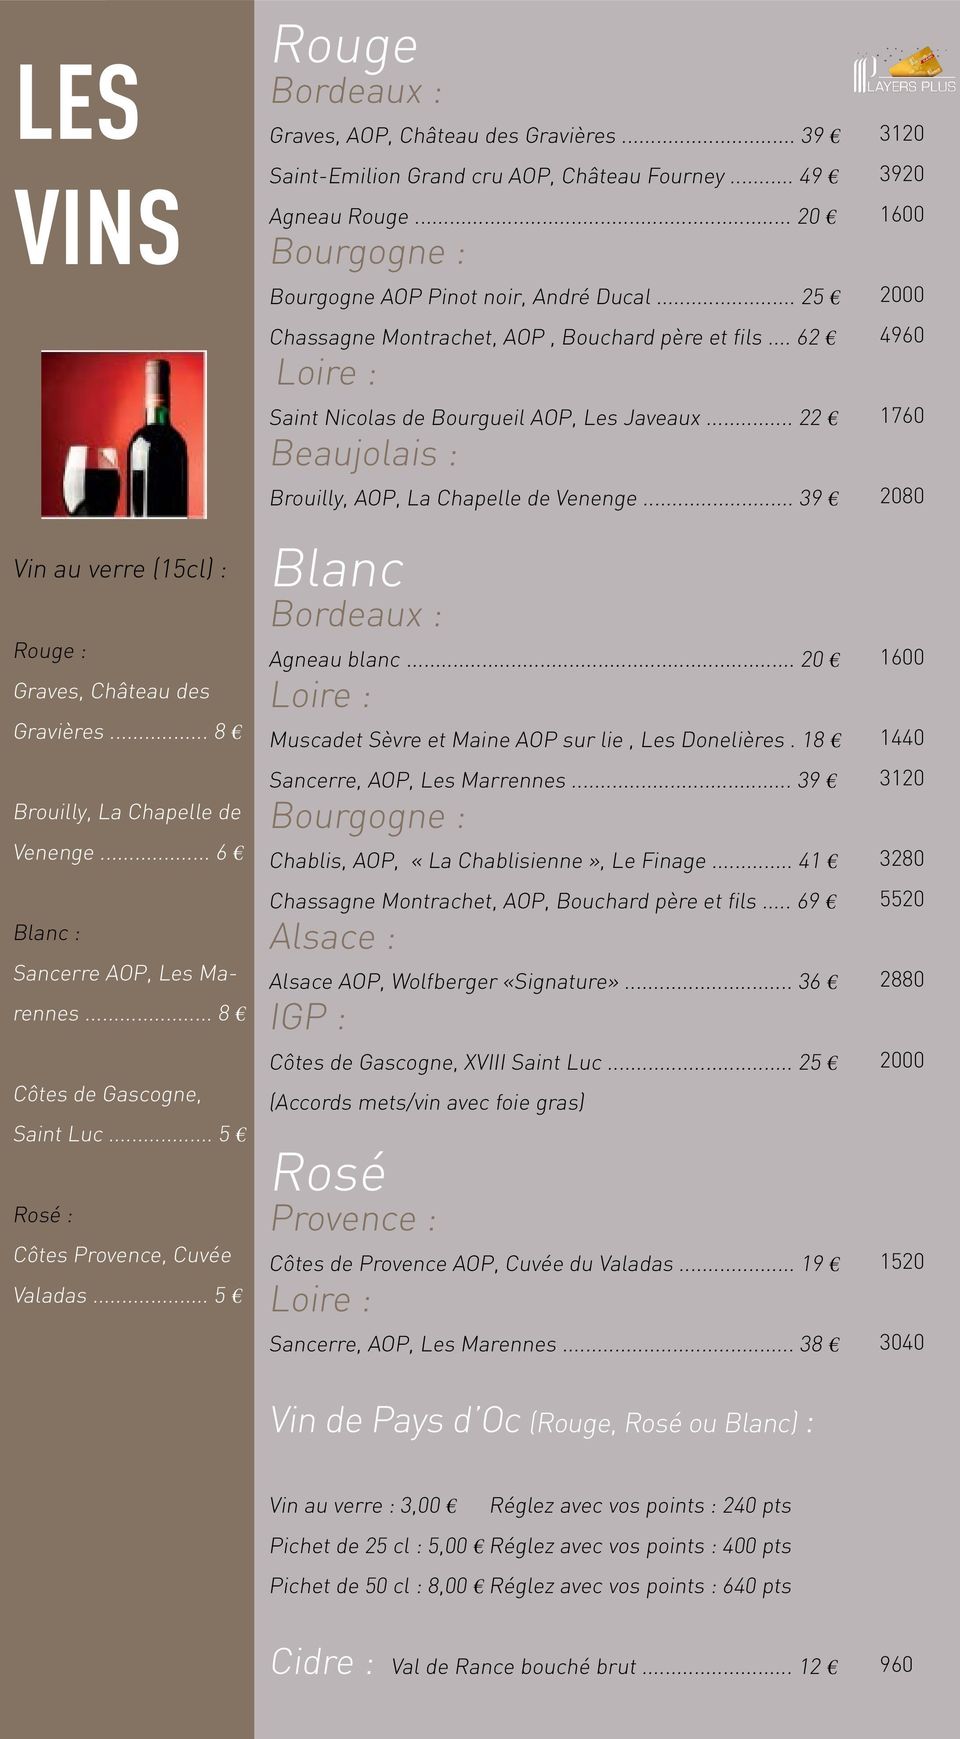 .. 20 Bourgogne : Bourgogne AOP Pinot noir, André Ducal... 25 Chassagne Montrachet, AOP, Bouchard père et fils... 62 Loire : Saint Nicolas de Bourgueil AOP, Les Javeaux.